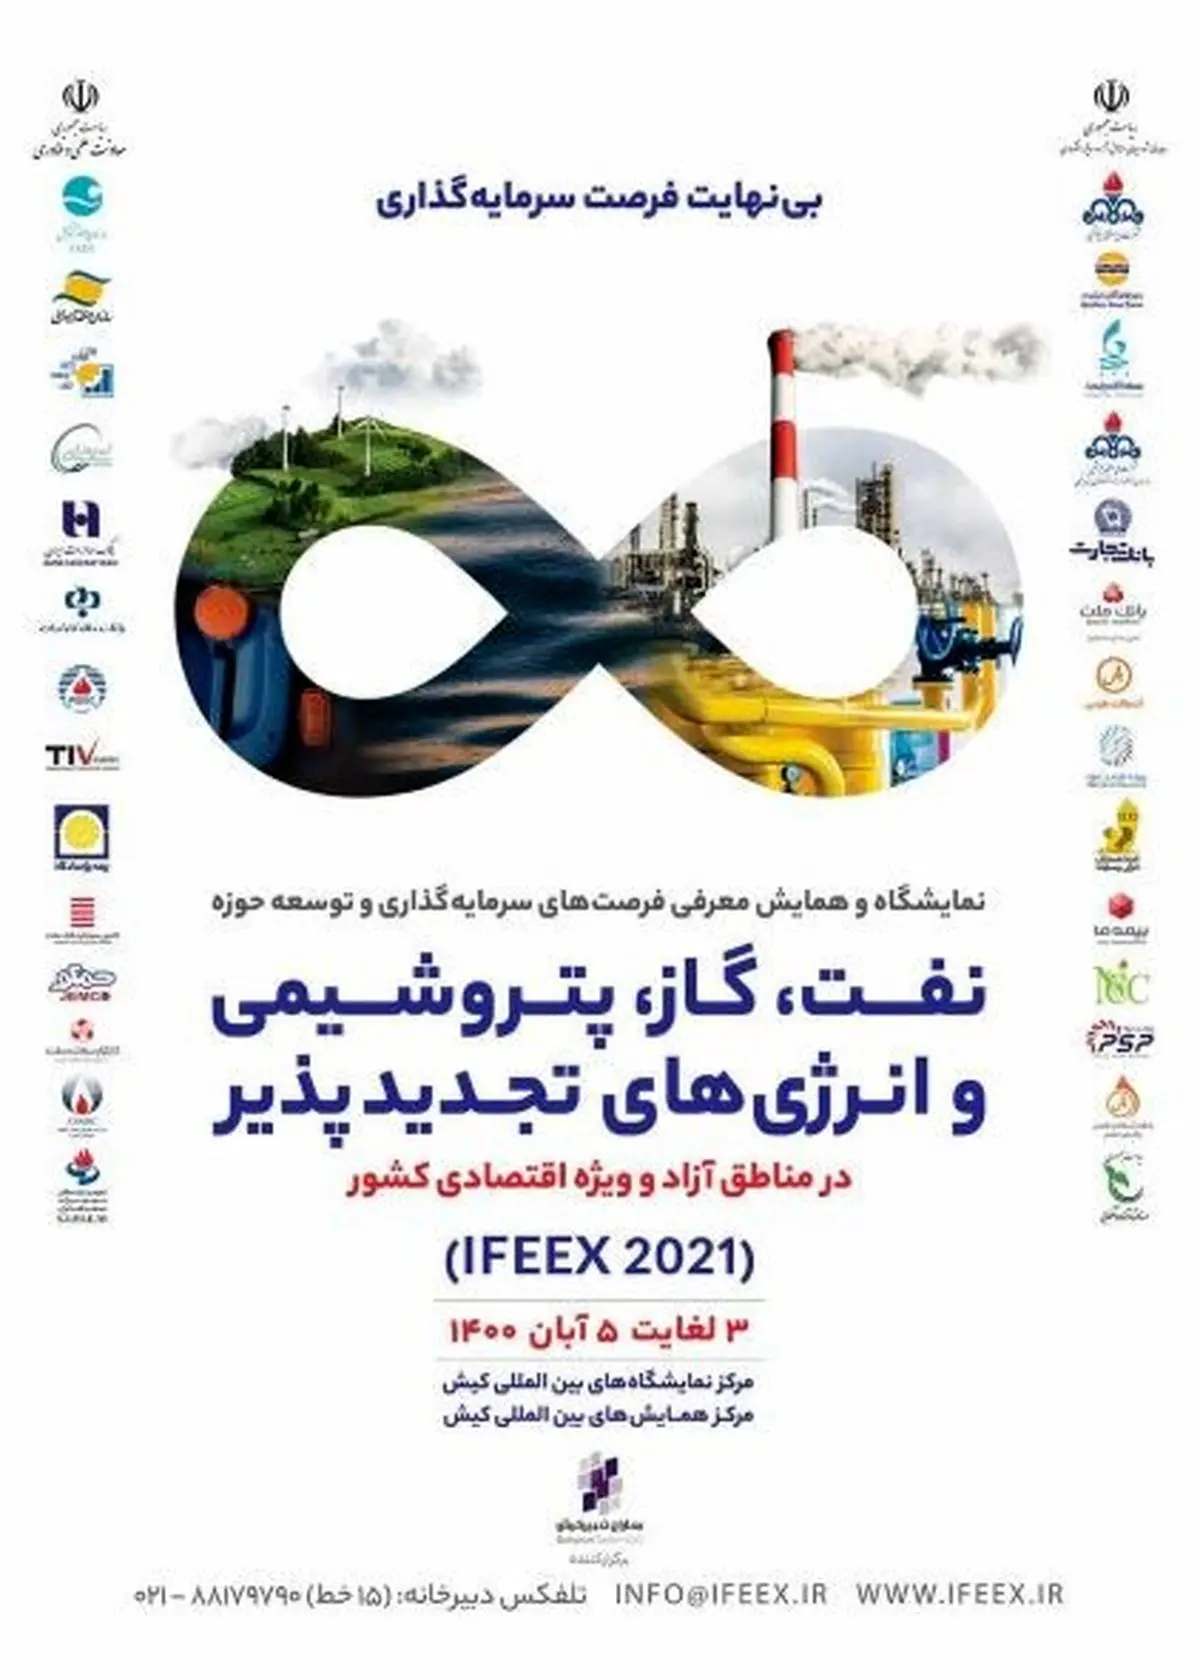 حضور منطقه آزاد چابهار در نمایشگاه و همایش نفت، گاز، پتروشیمی و صنایع تجدید پذیر کیش (IFEEX 2021)
